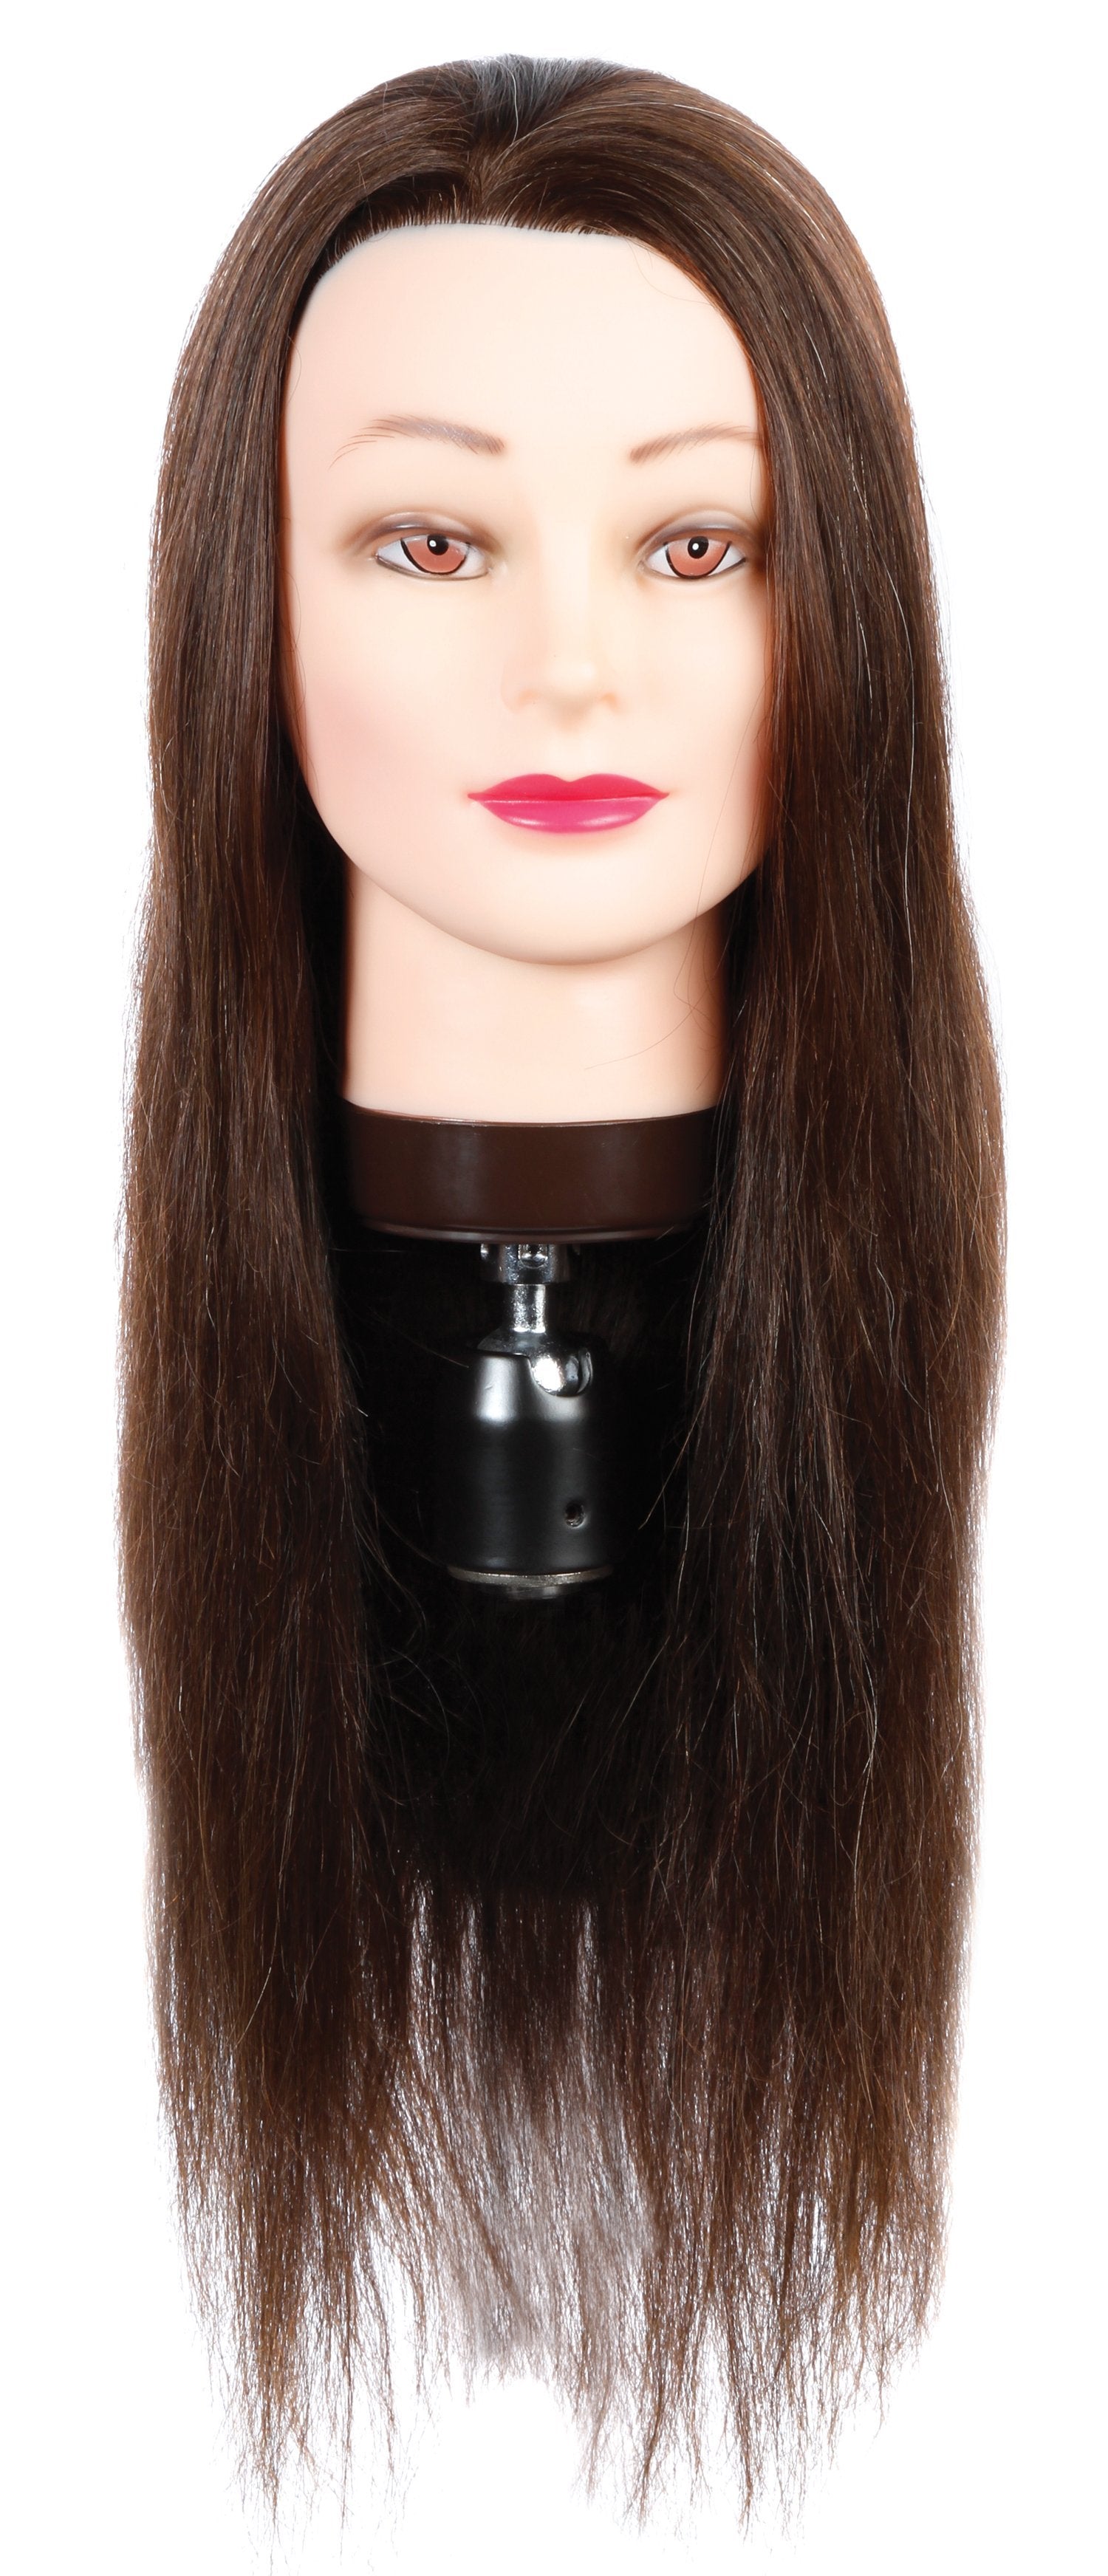 Ana [80% Human Hair Mannequin] HairArt Int'l Inc.